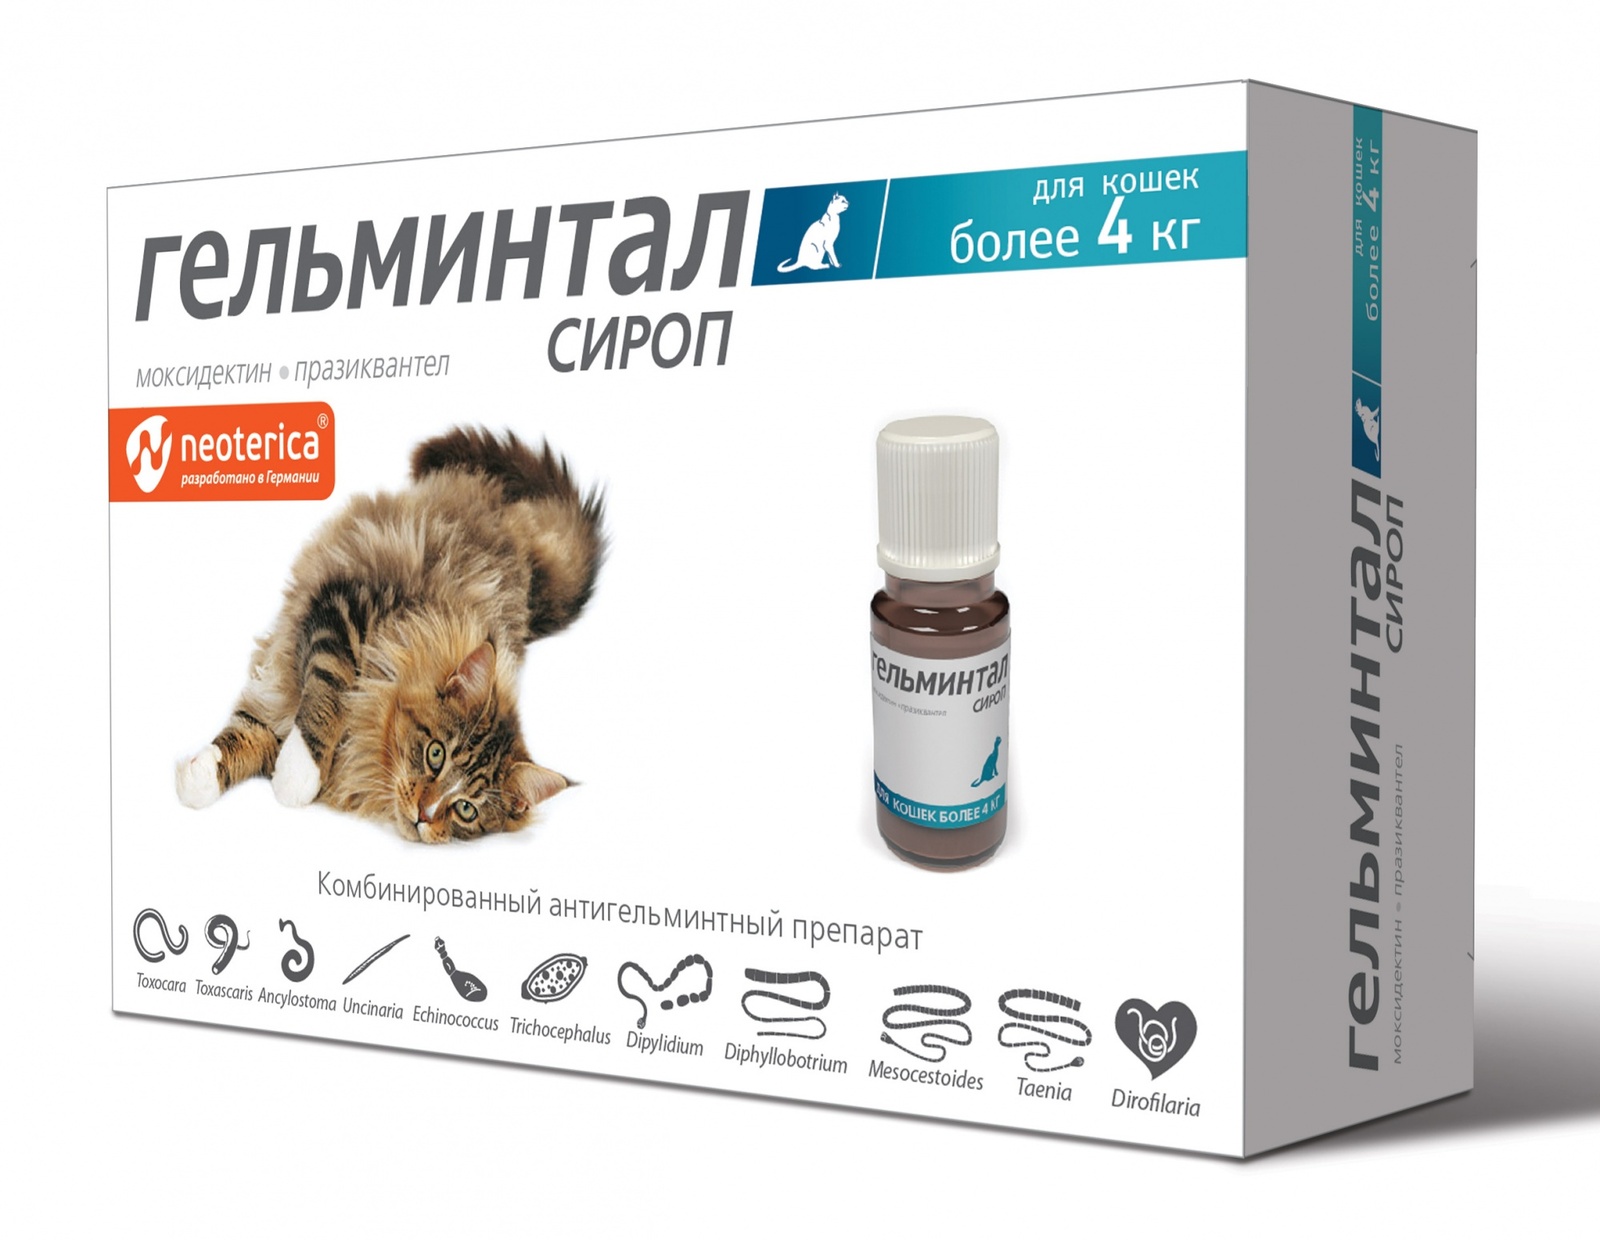 Гельминтал Гельминтал сироп от глистов, для кошек более 4 кг, 5 мл (60 г) гельминтал гельминтал капли на холку от глистов для собак более 10 кг 2 пипетки по 2 5 мл 20 г